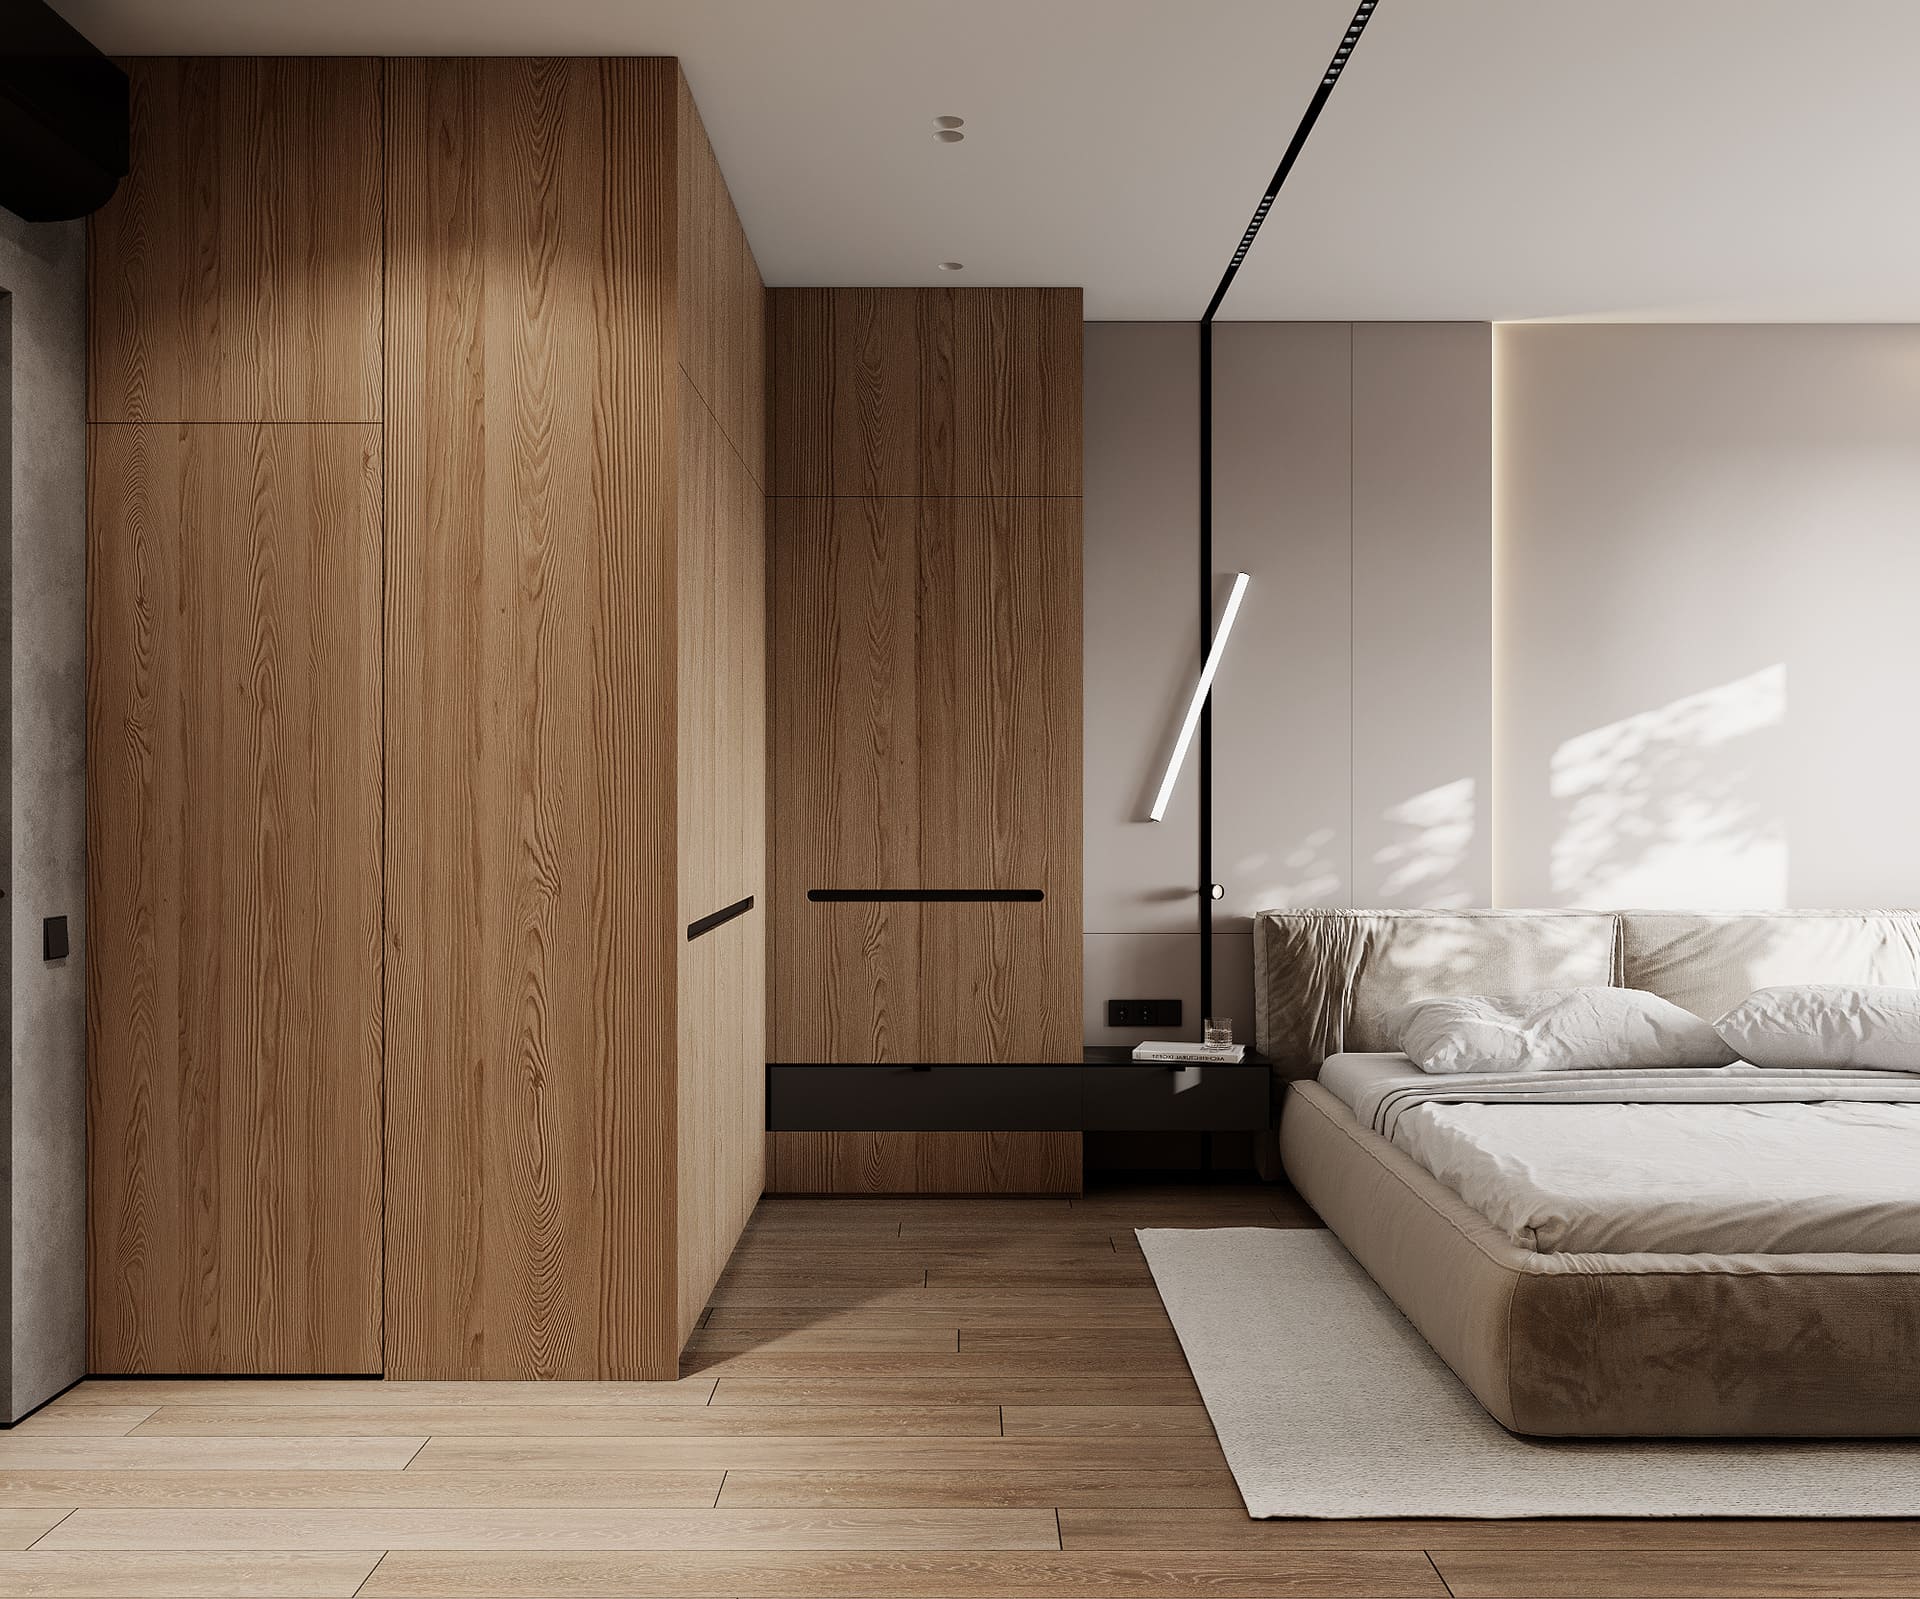 Лаконичная квартира в стиле минимализм, спальня, фото 21